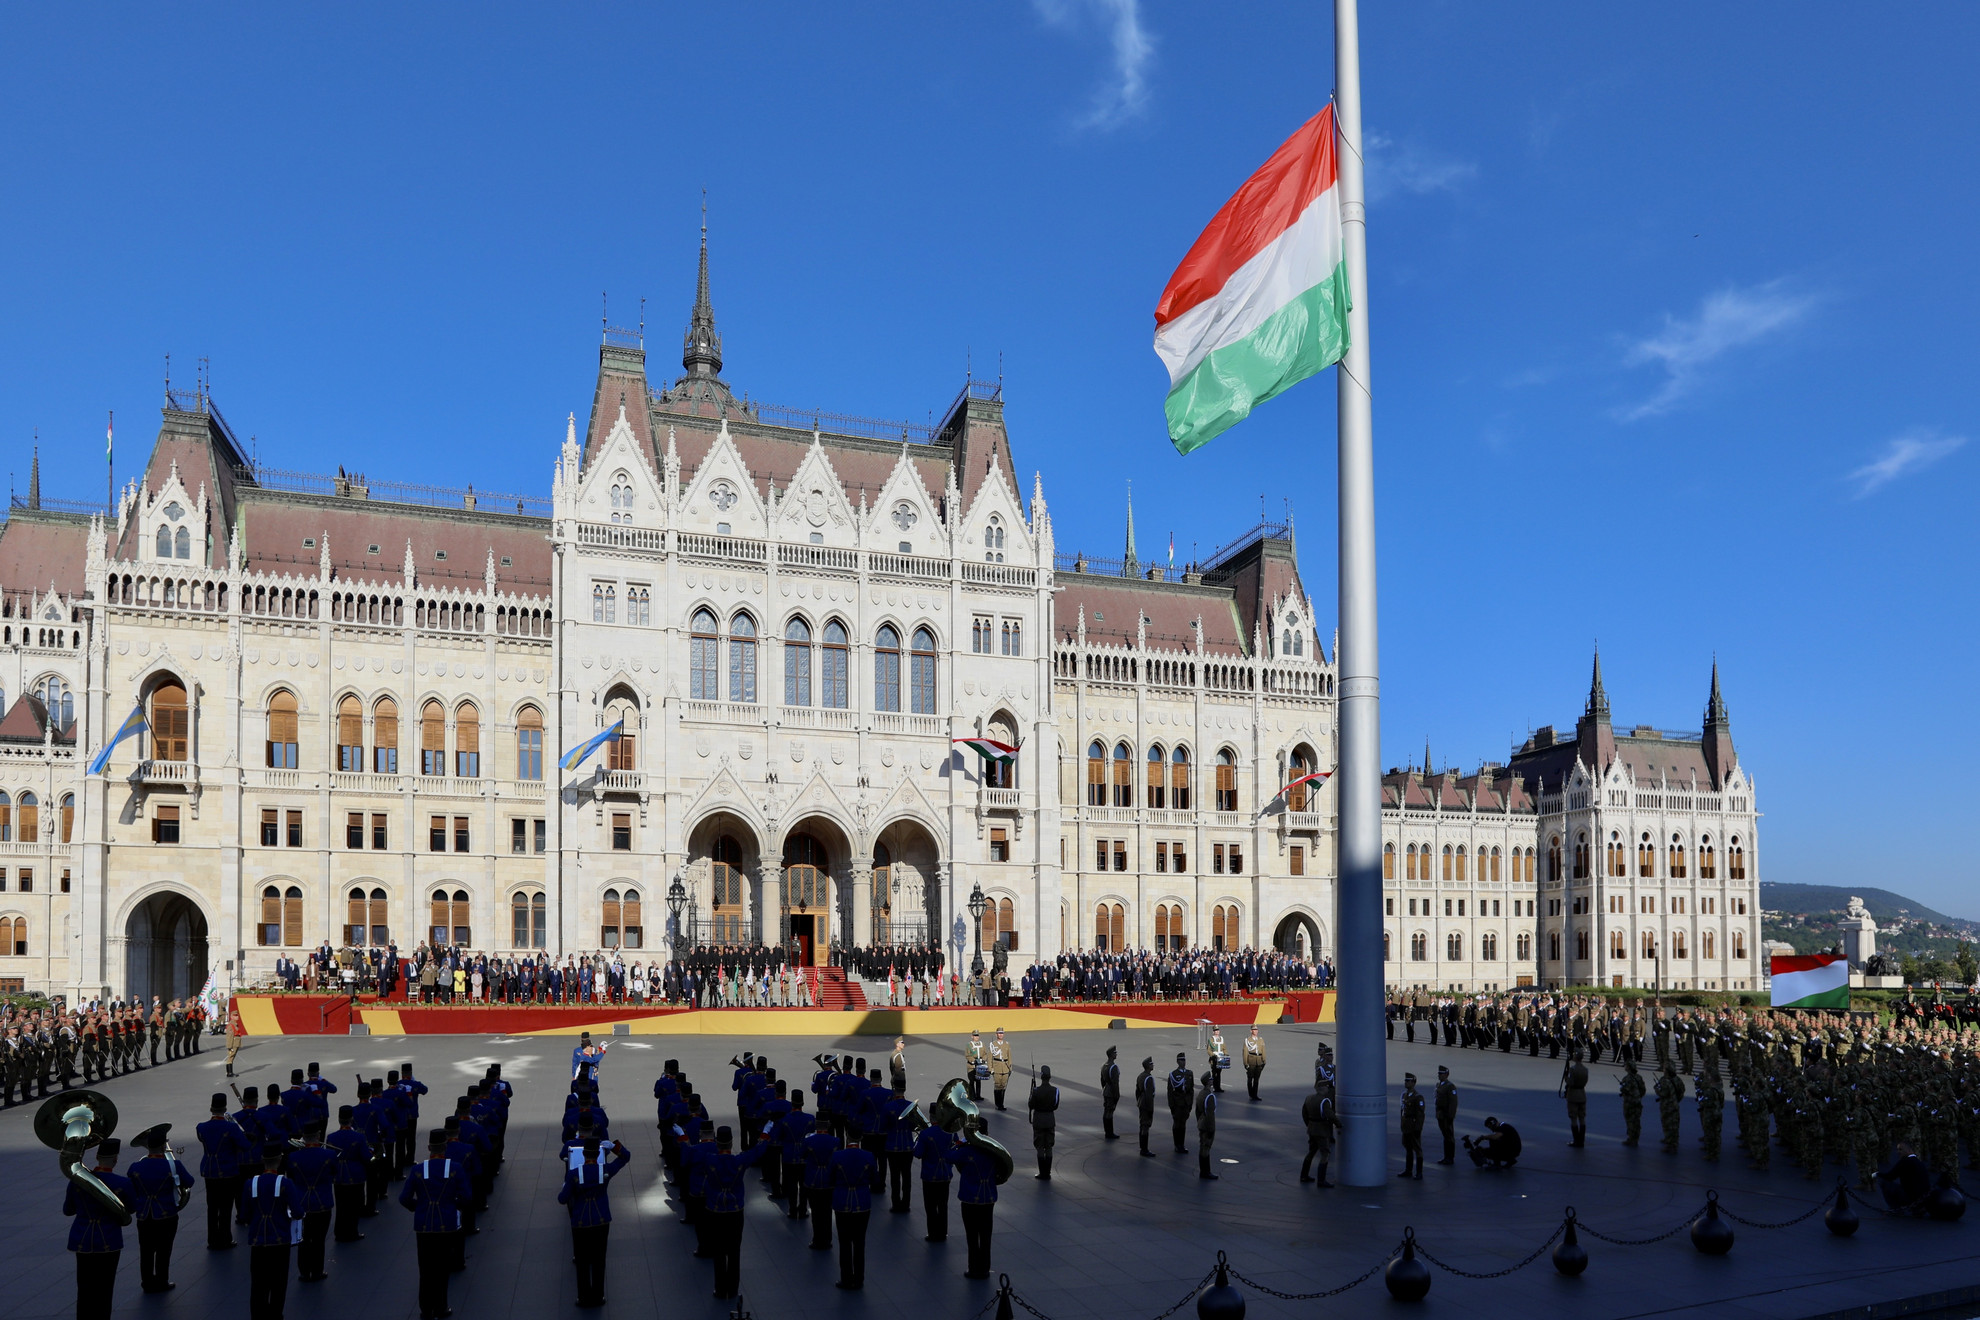 Katonai tiszteletadás mellett, a közjogi méltóságok jelenlétében felvonják Magyarország nemzeti lobogóját az államalapító Szent István király ünnepe alkalmából tartott díszünnepségen és tisztavatáson az Országház előtt, a Kossuth Lajos téren 2020. augusztus 20-án